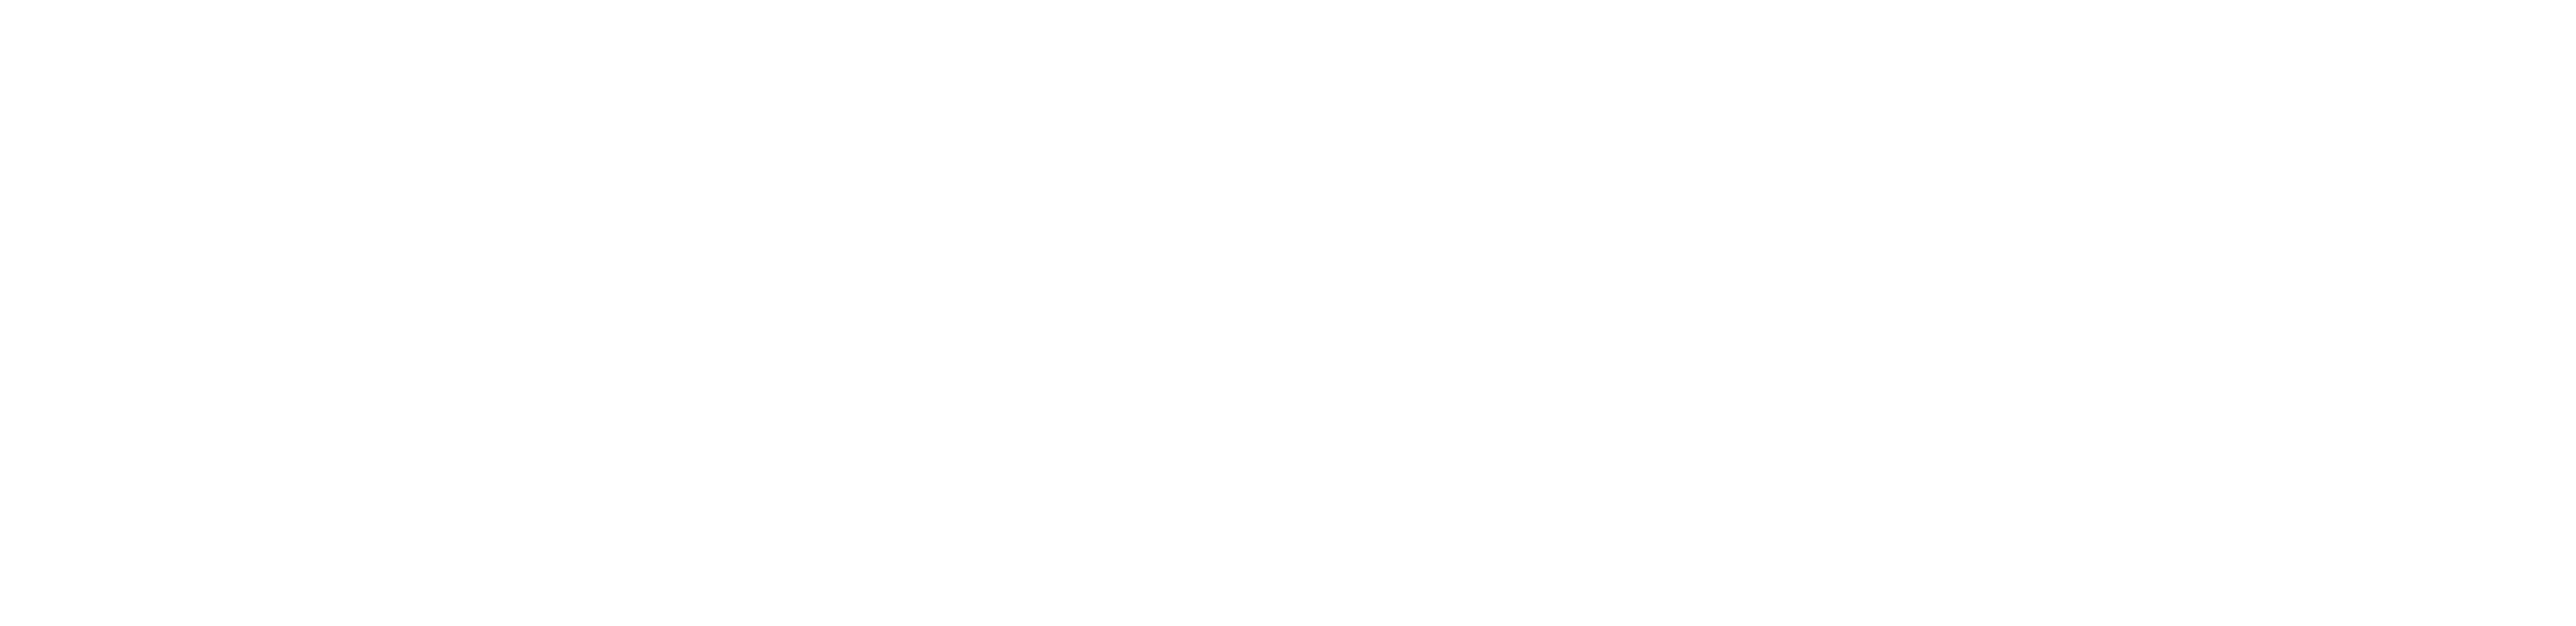 Cerner Corporation Logo - Behavioral Health